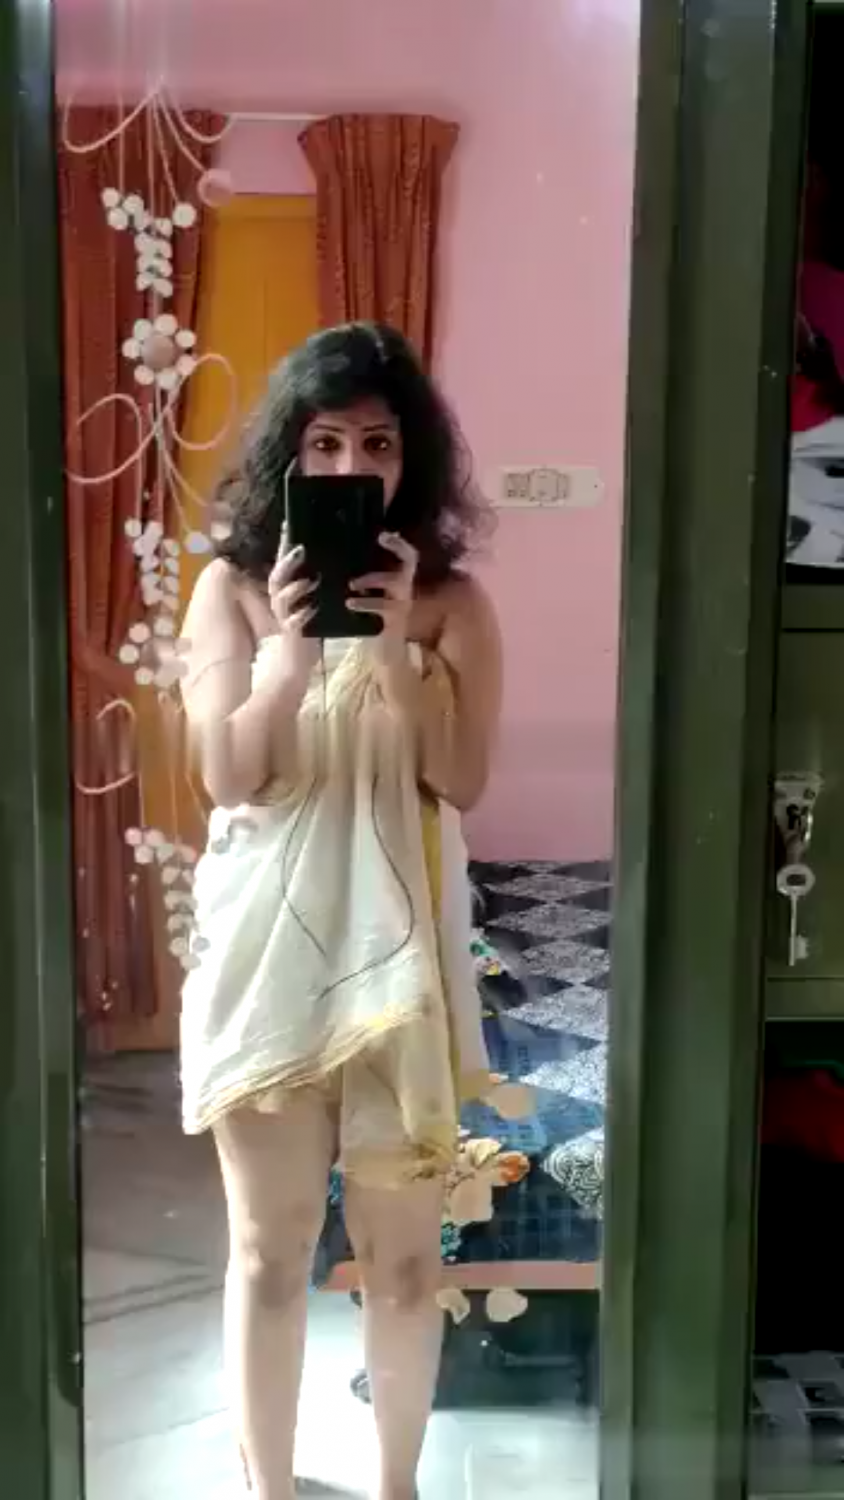 Sex Porn 300 Kerala - HOT MALAYALI GIRL 5 VIDS - Porn Videos & Photos - EroMe